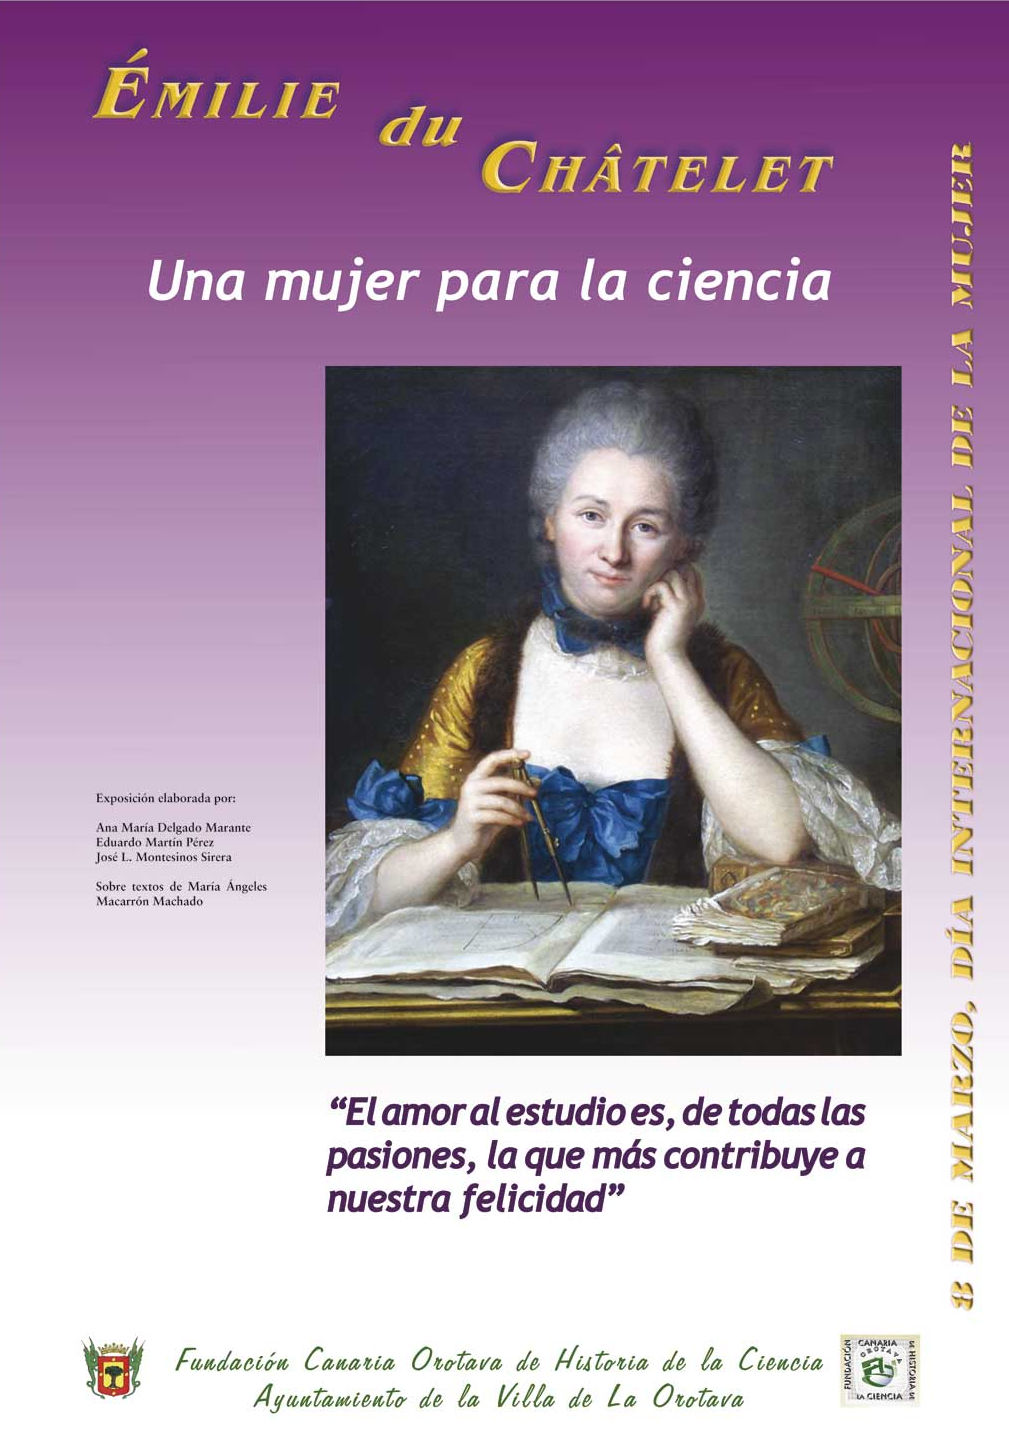 Émilie du Châtelet, una mujer para la ciencia